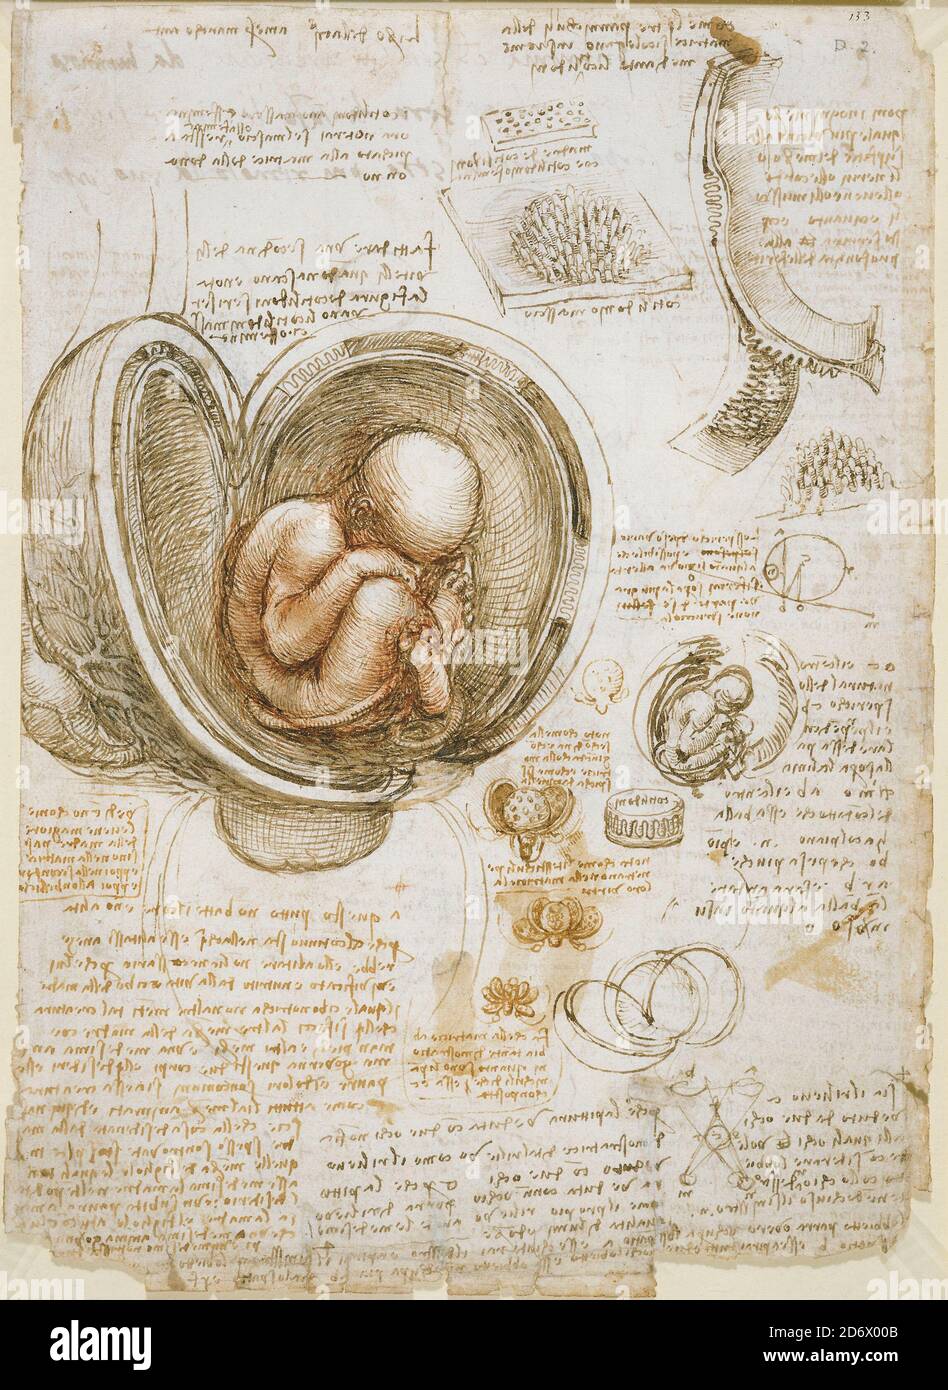 Titel: Studien des Fötus im Mutterleib Ersteller: Leonardo Da Vinci Datum: ca.1510-13 Medium: Stift und Tinte mit Waschung über roten und schwarzen Kreiden auf Papier Maße: 30.4 x 22 cm Ort: Royal Collection Trust Stockfoto